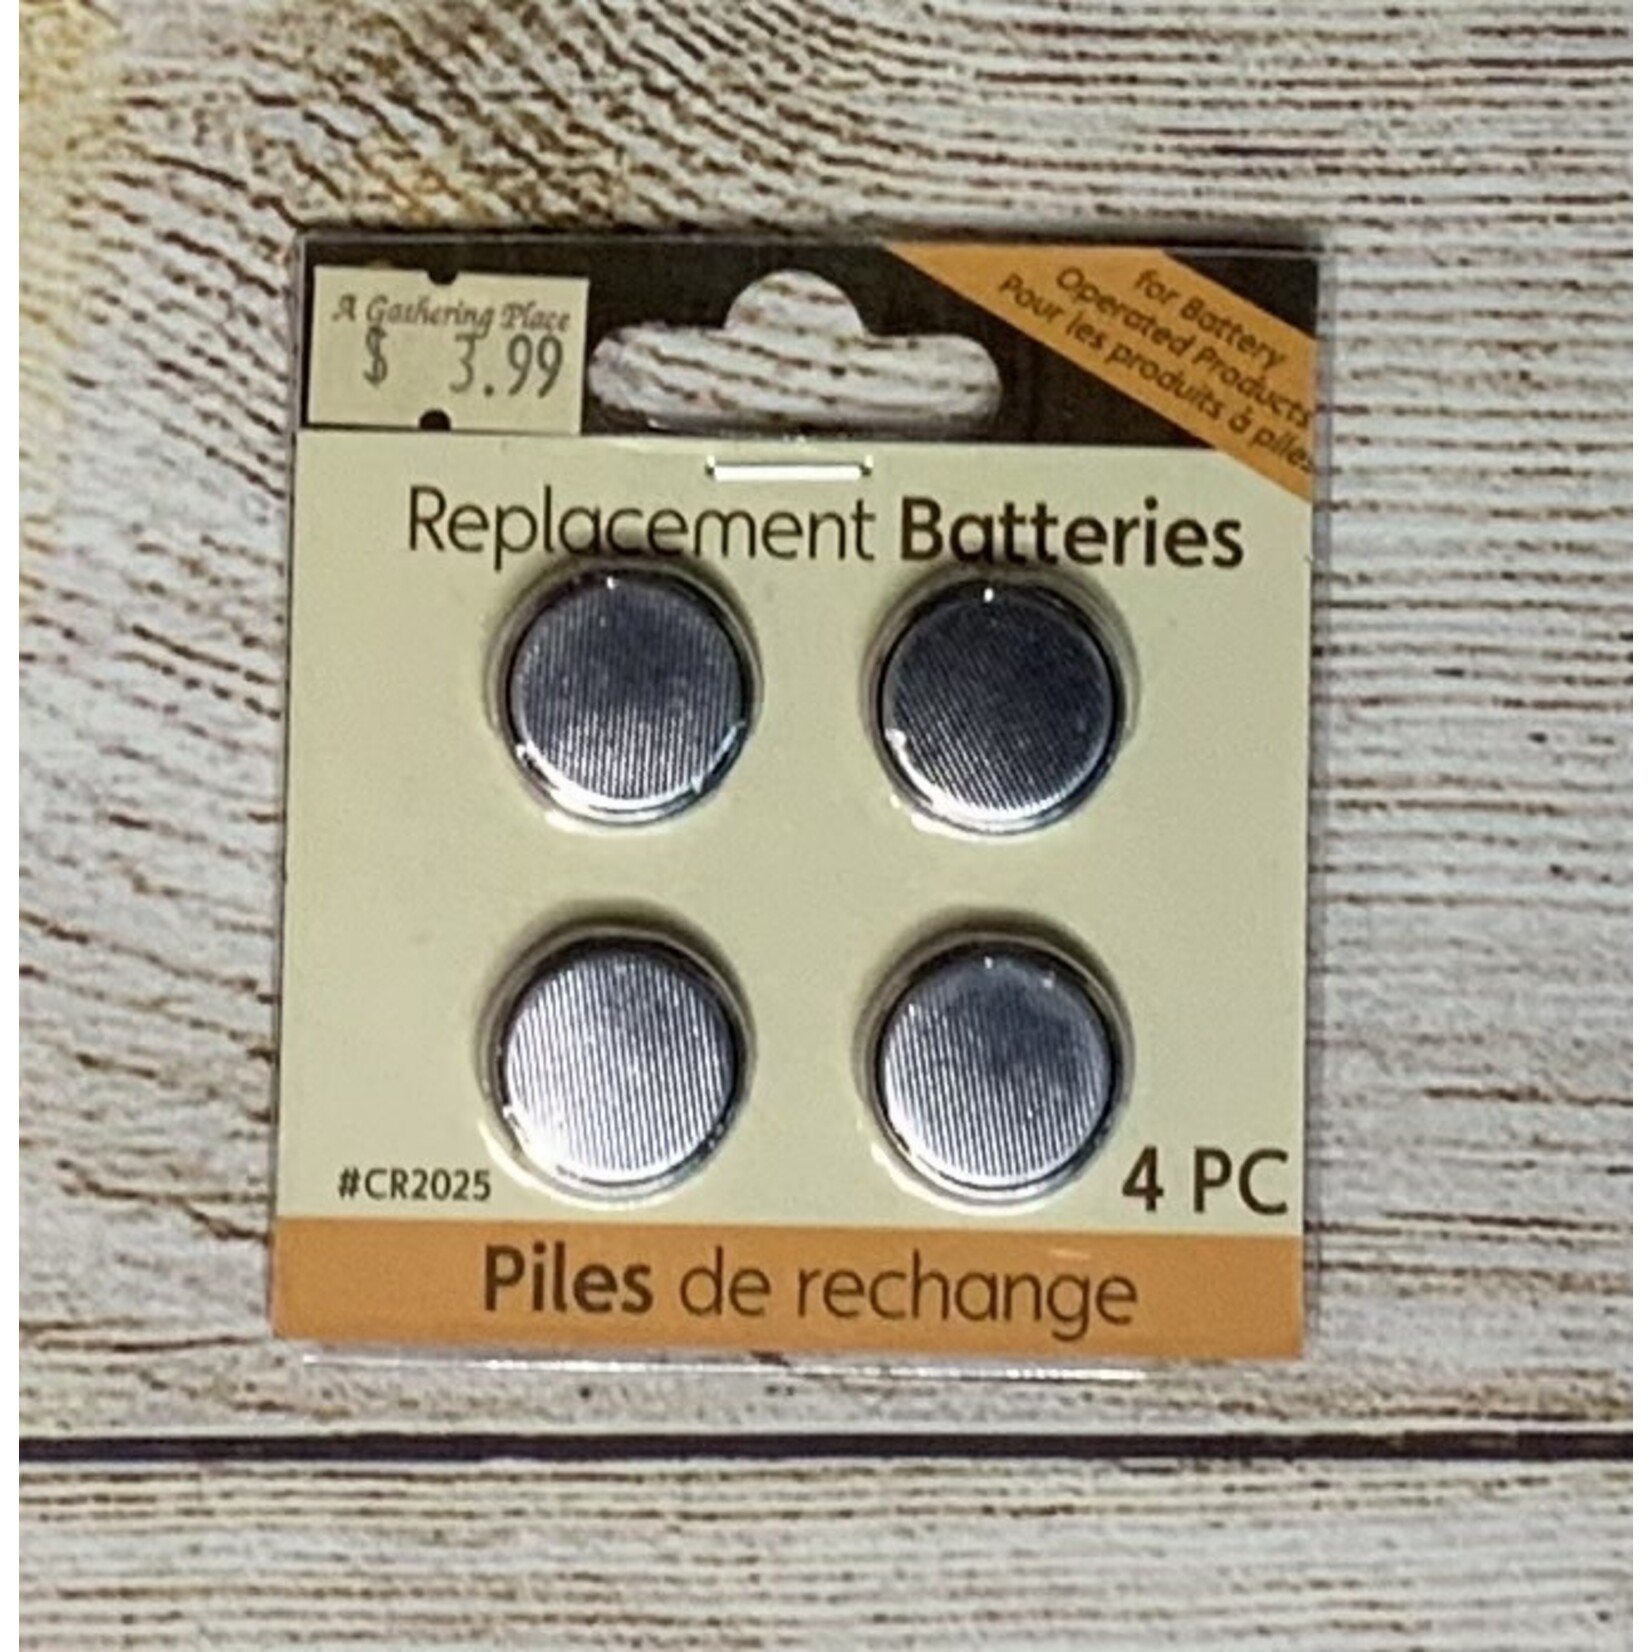 Darice CR2025 Replacement Batteries